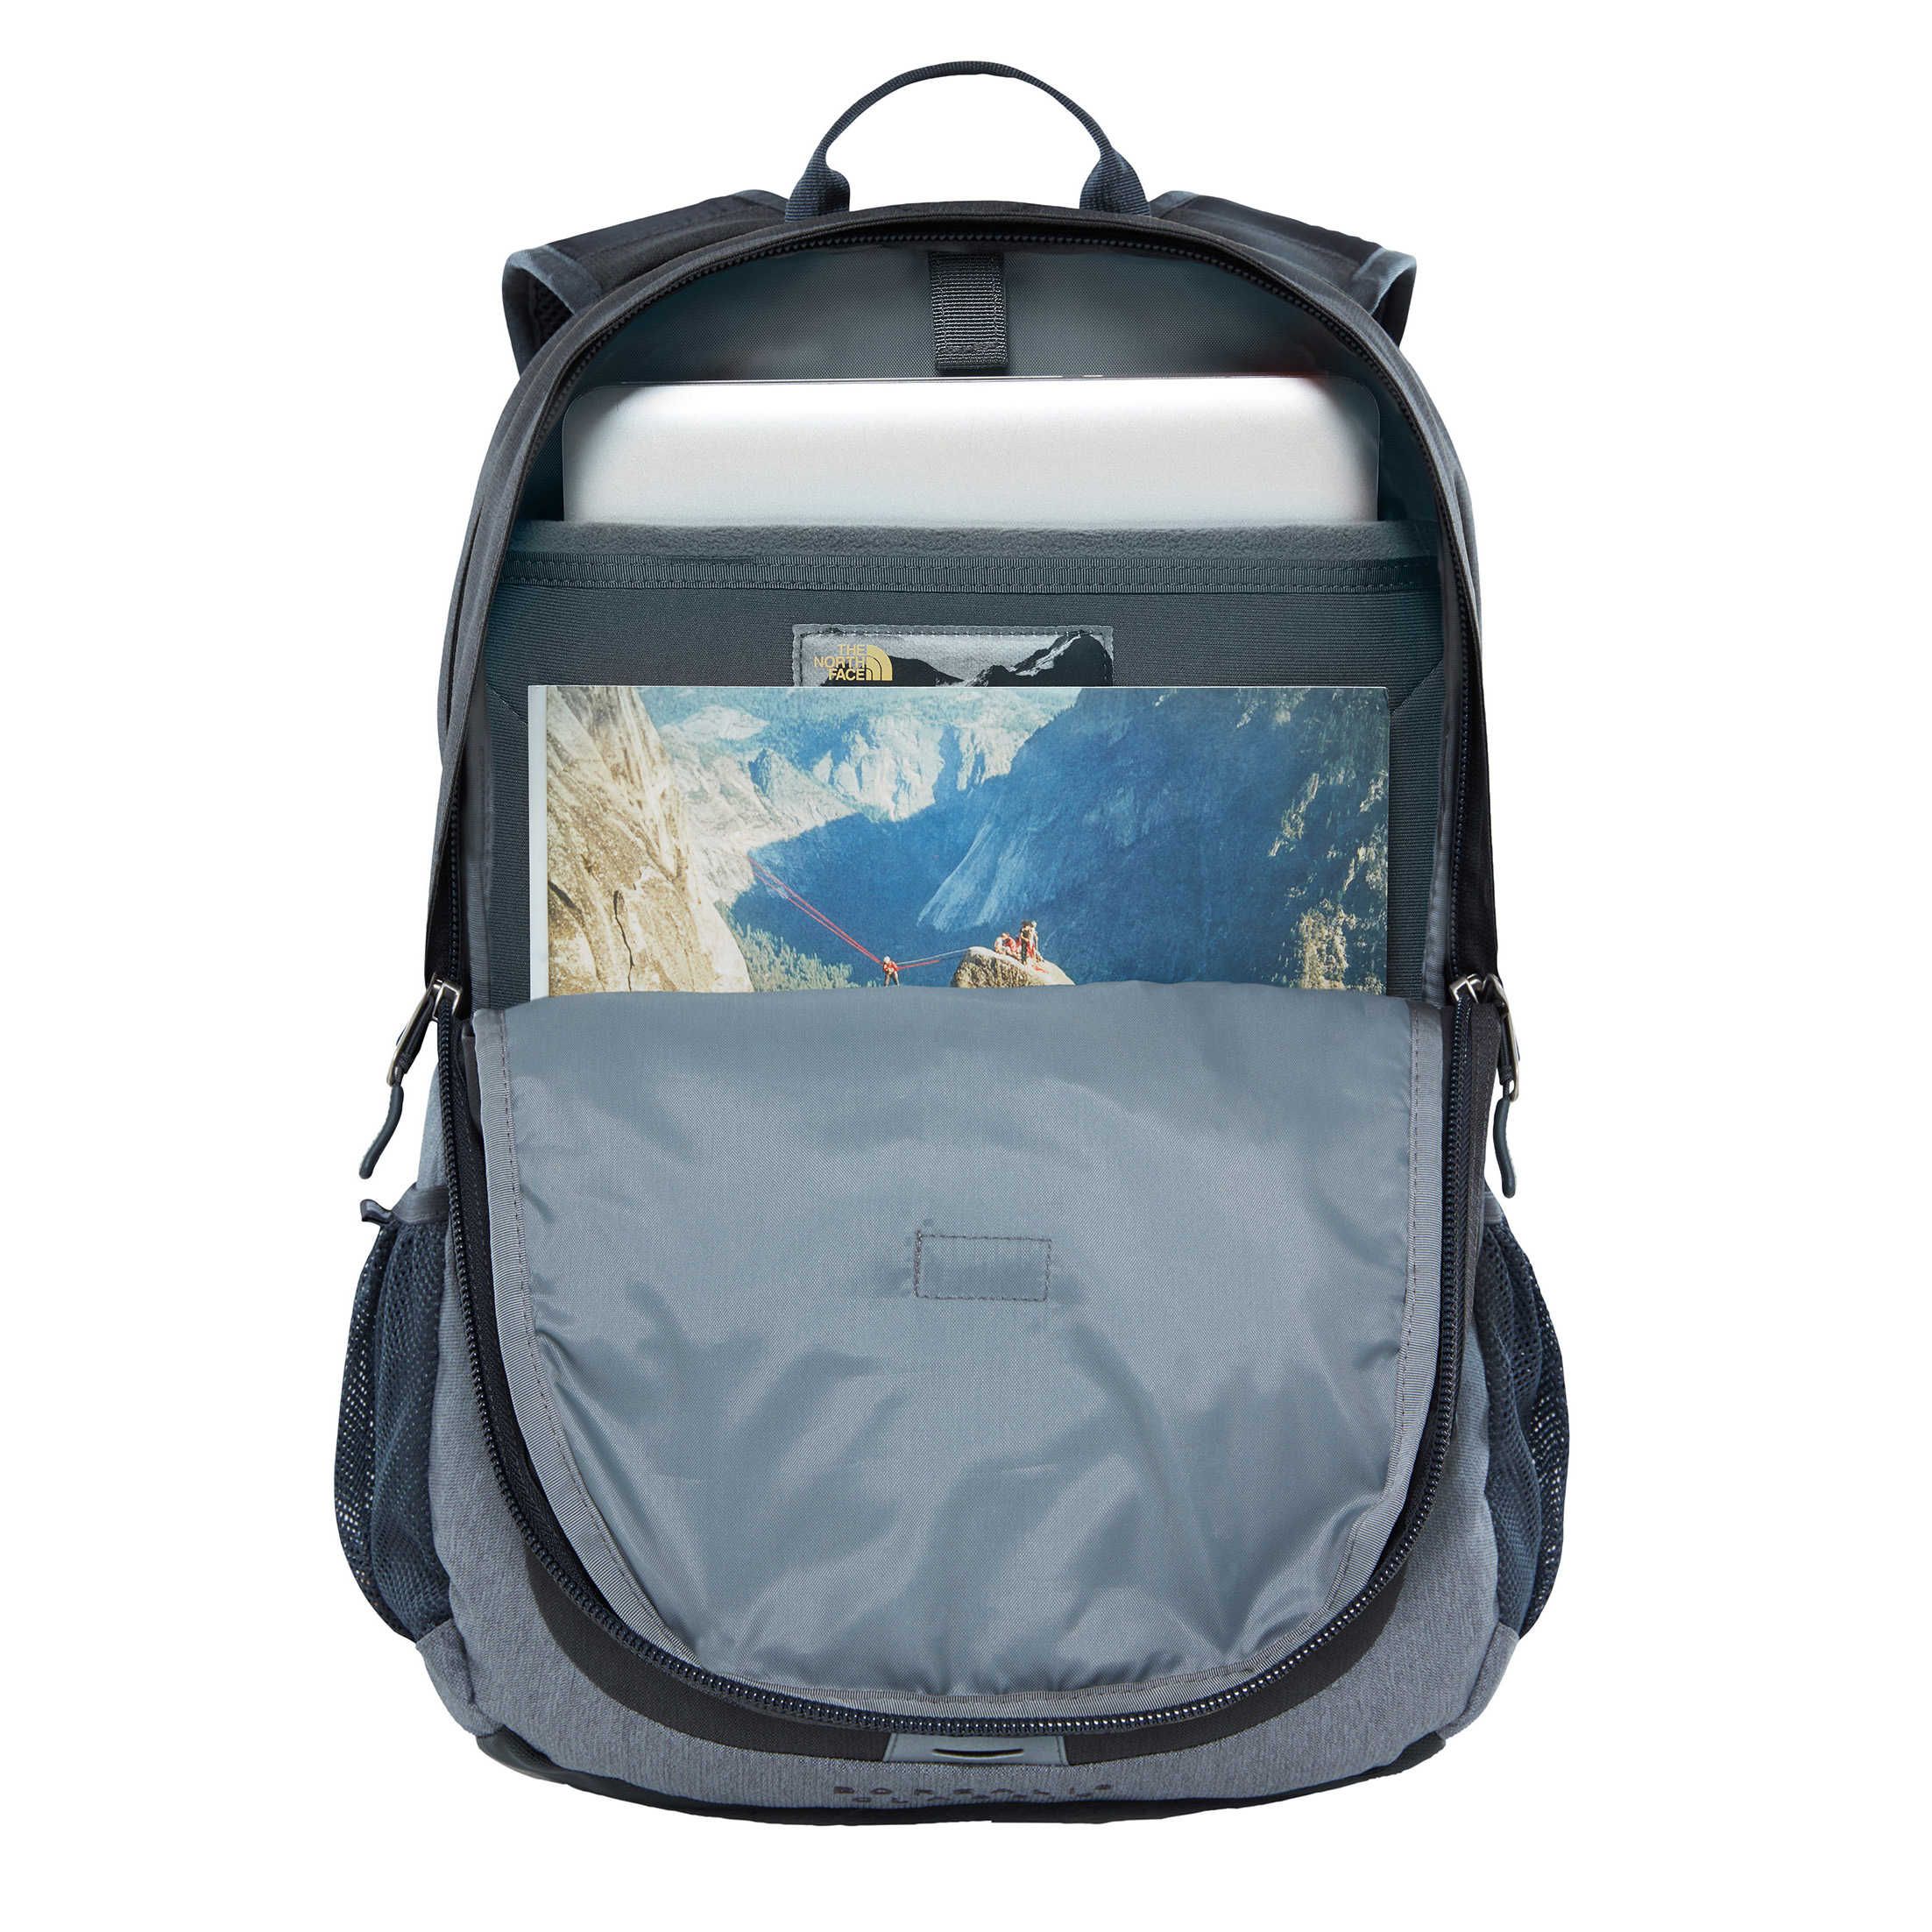 Sac à dos sport en Nylon 600D avec sac intérieur et compartiment à